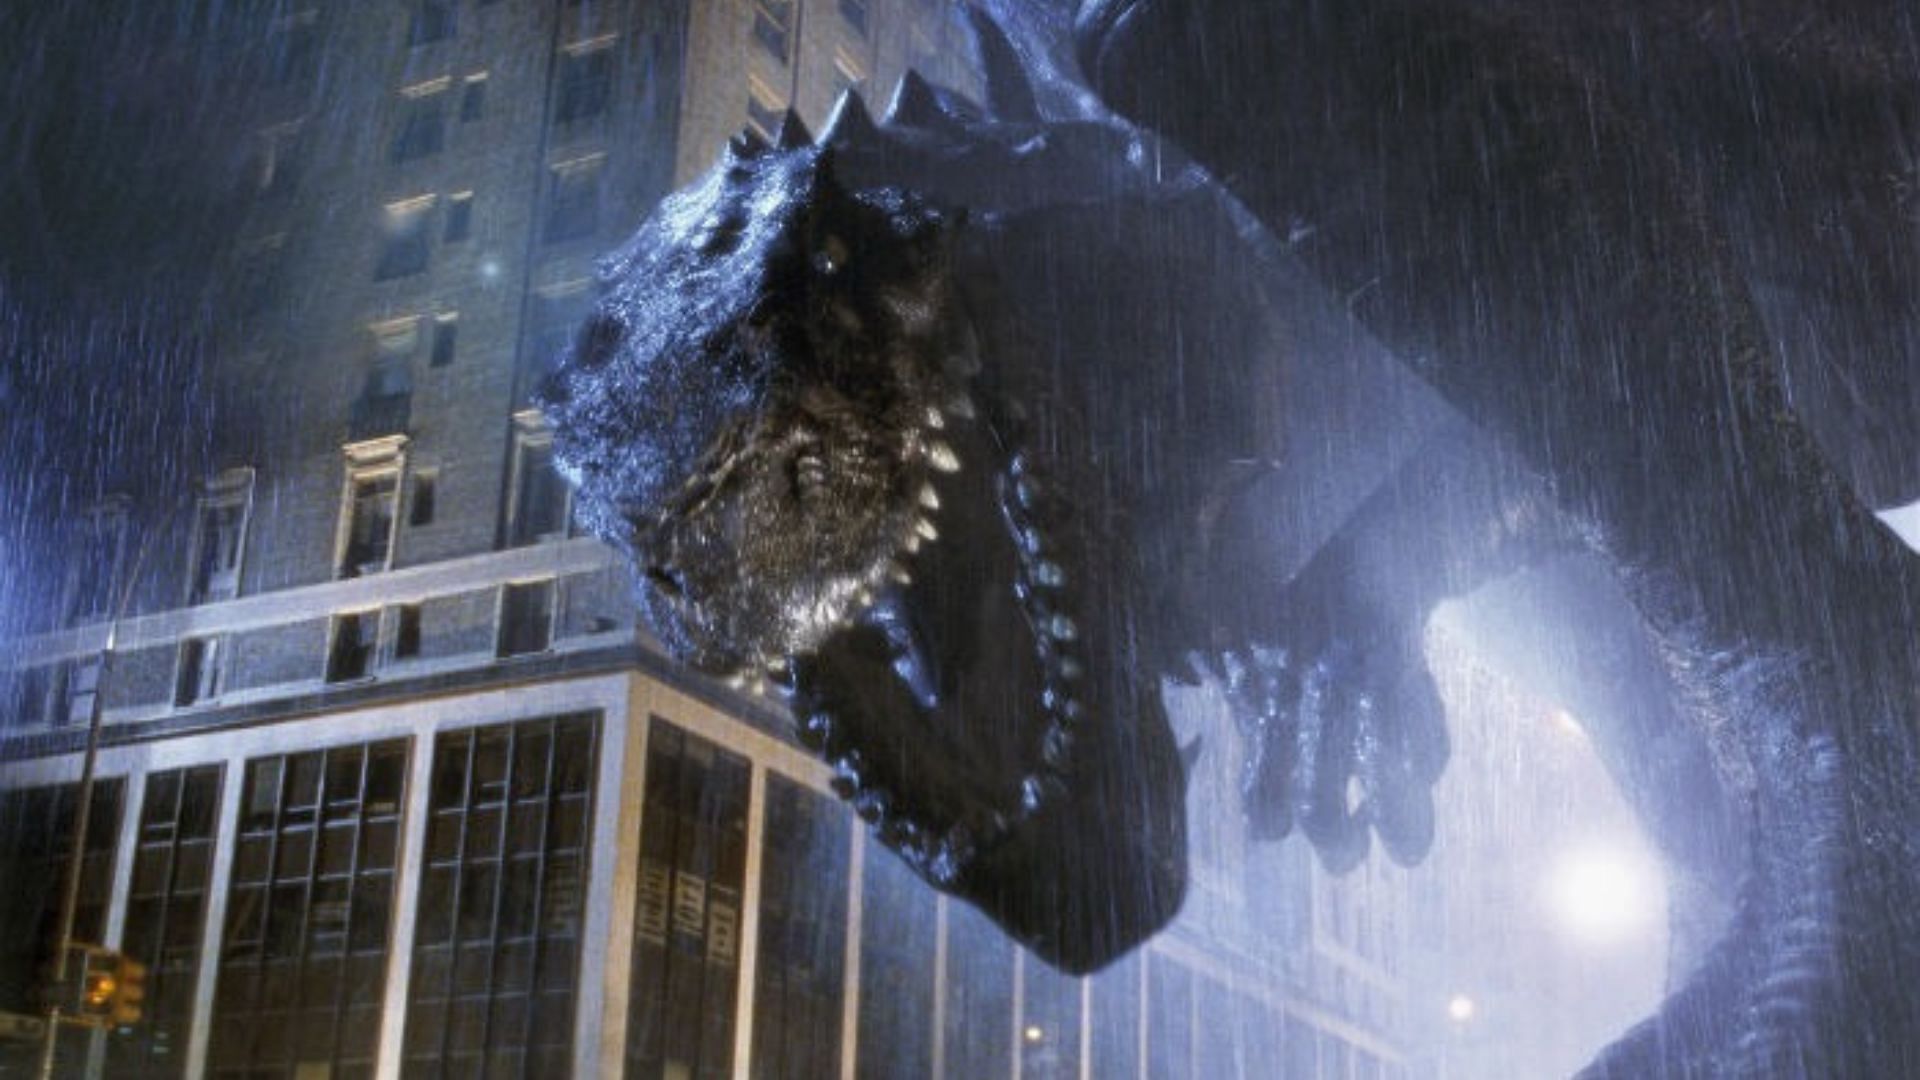 Godzilla 1998 (Image via IMDB)